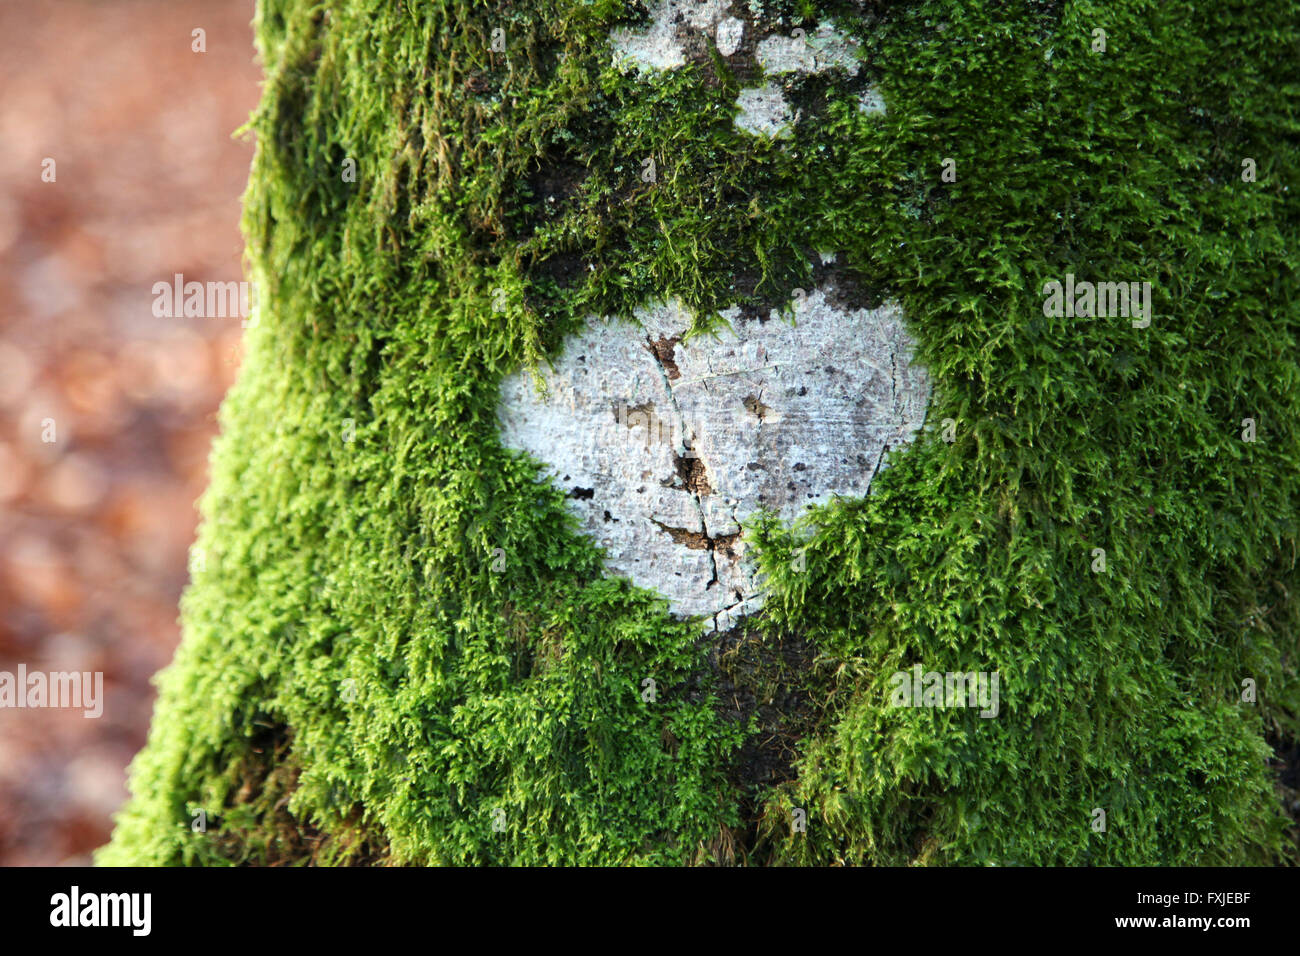 C'est une photo d'une icône en forme de coeur blanc qui est gravé sur un tronc recouvert de mousse verte. Il a un visage symbolique Banque D'Images